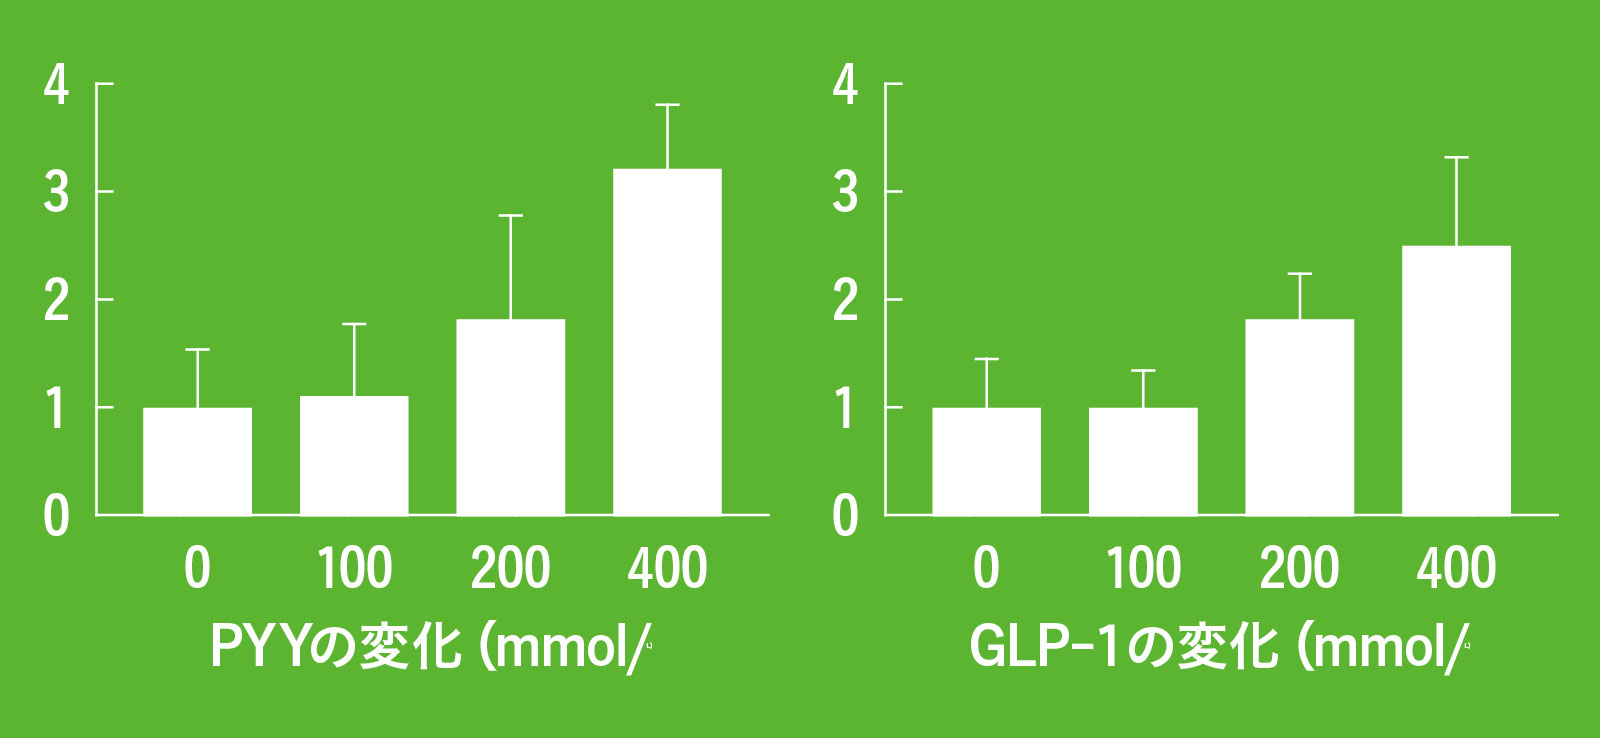 短鎖脂肪酸の一種 プロピオン酸 と 食欲を低下させる PYY と GLP-1 の分泌量